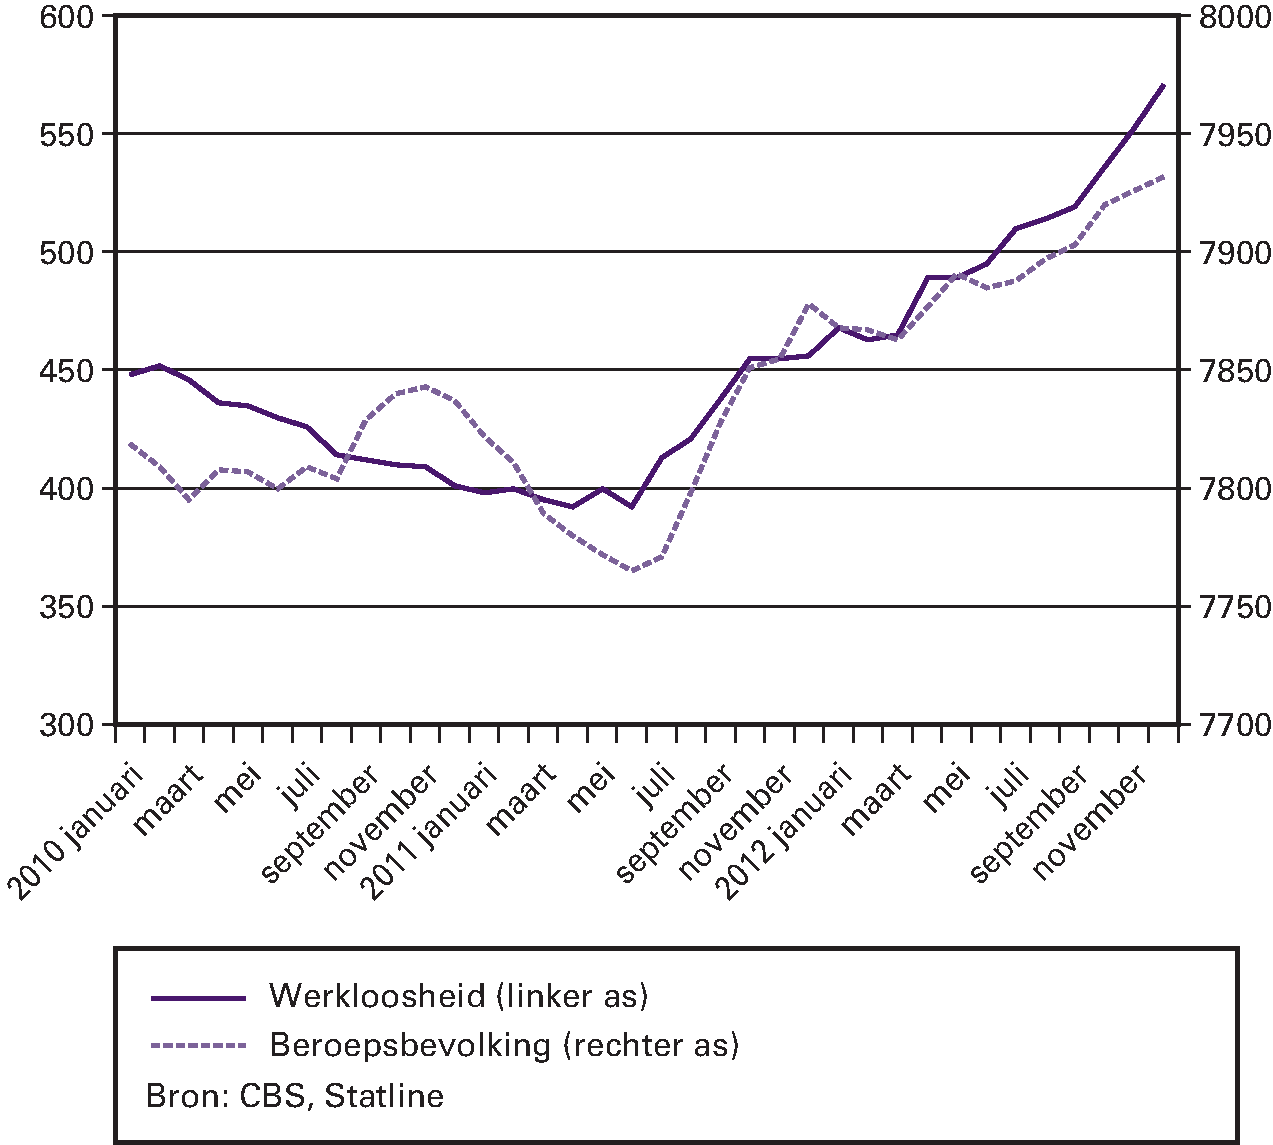 Figuur 3.1: Ontwikkeling werkloosheid en beroepsbevolking in 2010 tot en met 2012 (aantal personen x 1.000, voor seizoen gecorrigeerd, Nederlandse definitie)